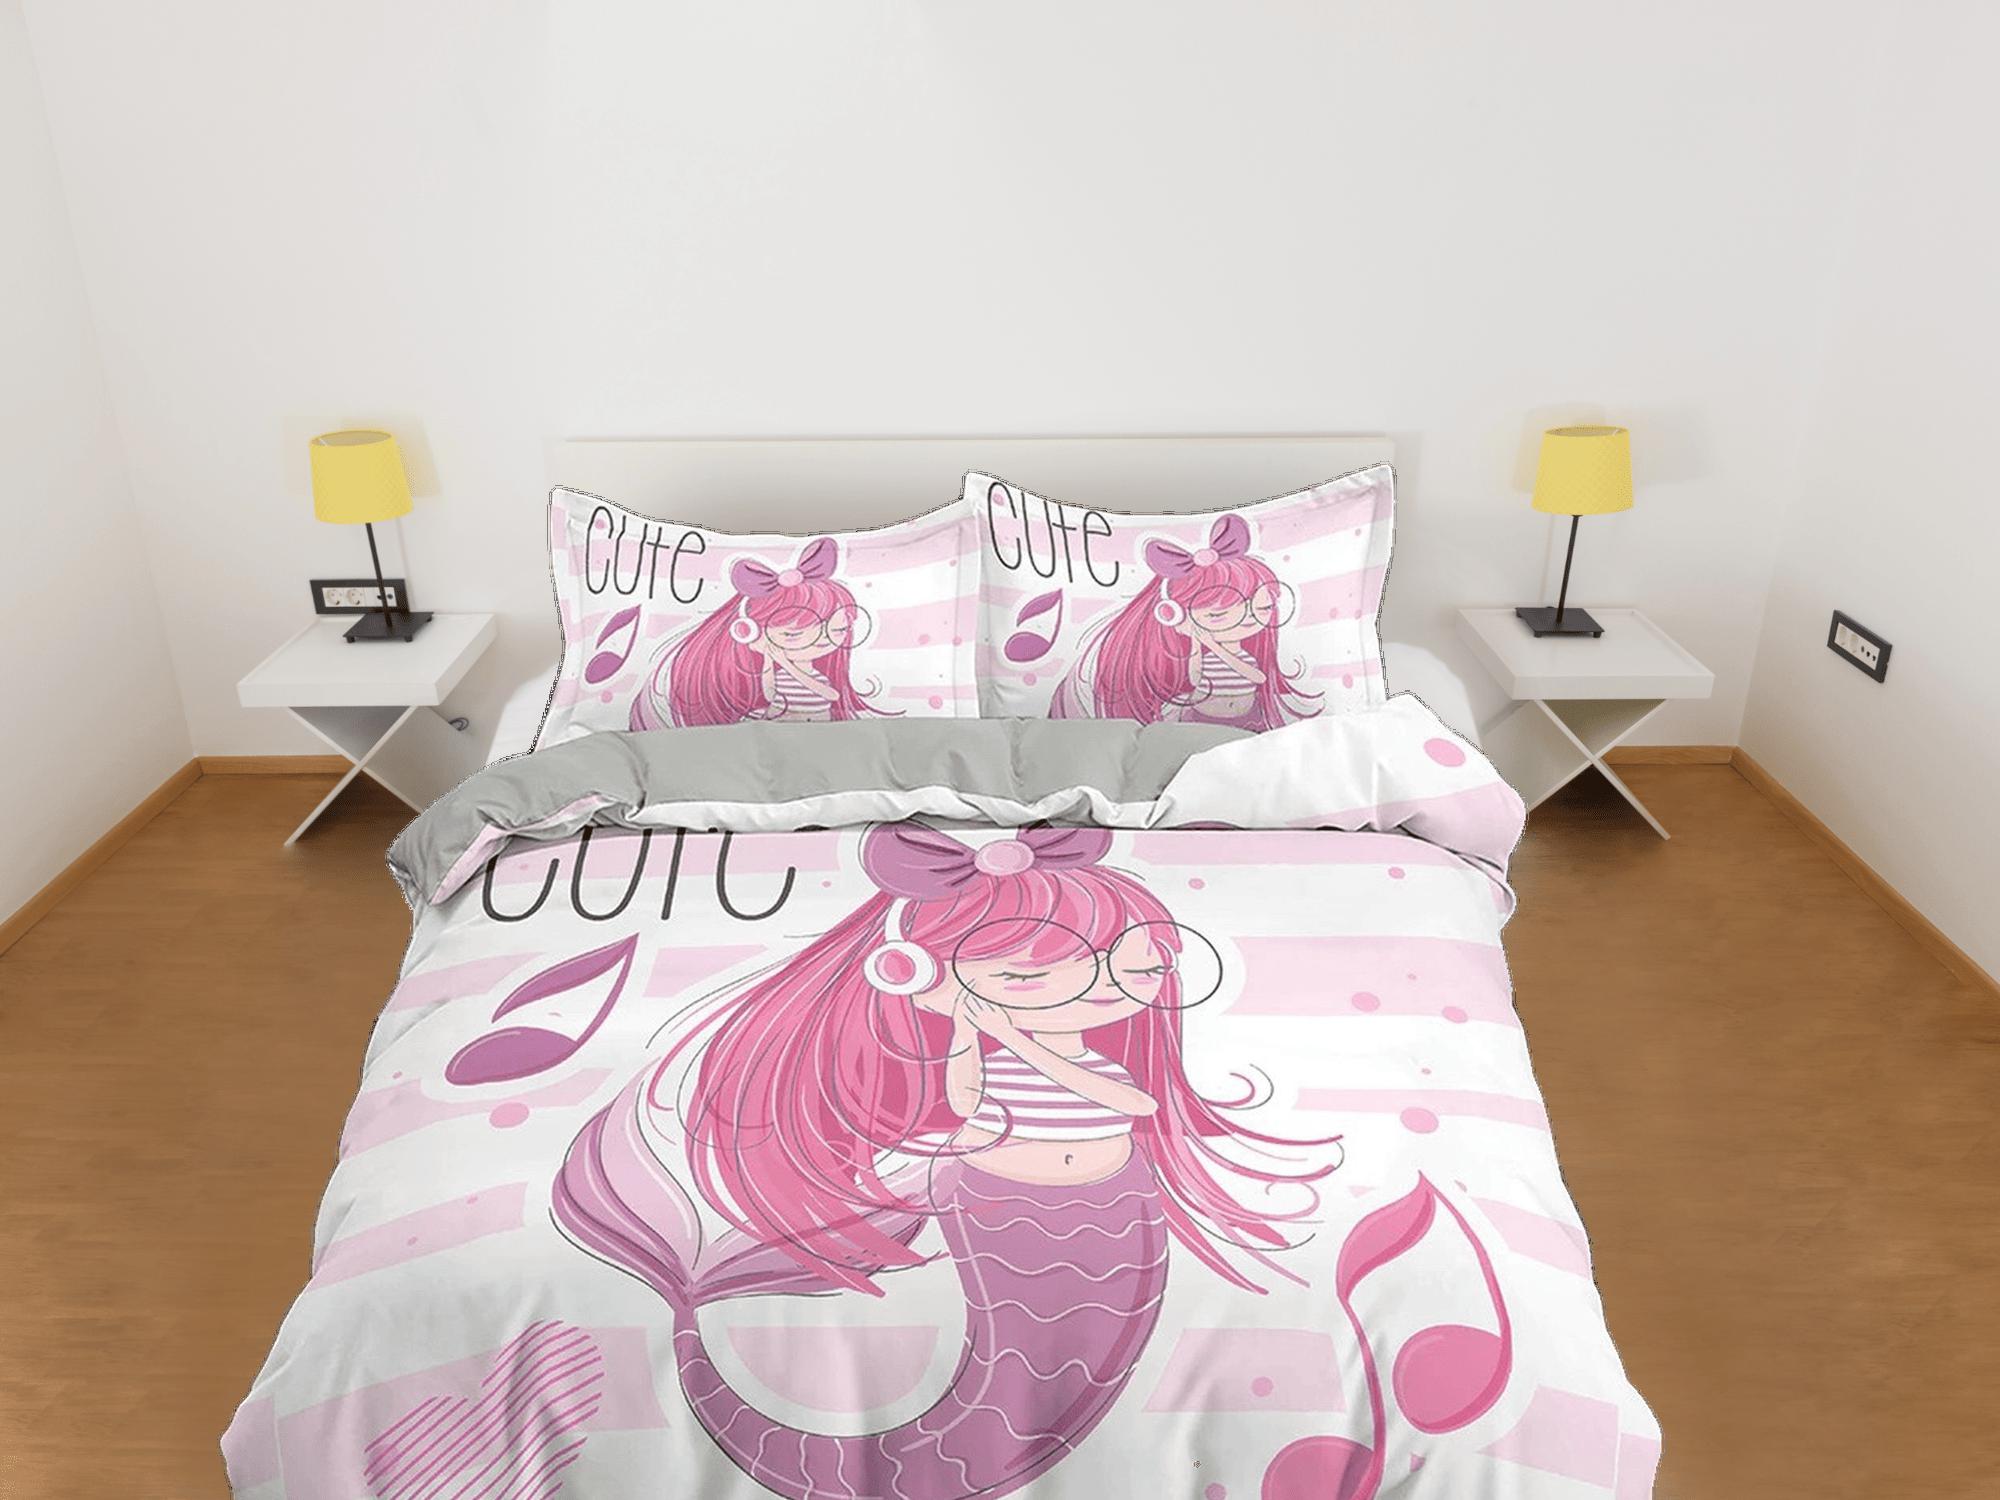 daintyduvet Cute Mermaid Kids Duvet Cover Set, Girly Pink Bedding Set, Toddler Bedding, Kids Bedroom, Music Lover Bed, Duvet King Queen Full Twin Single